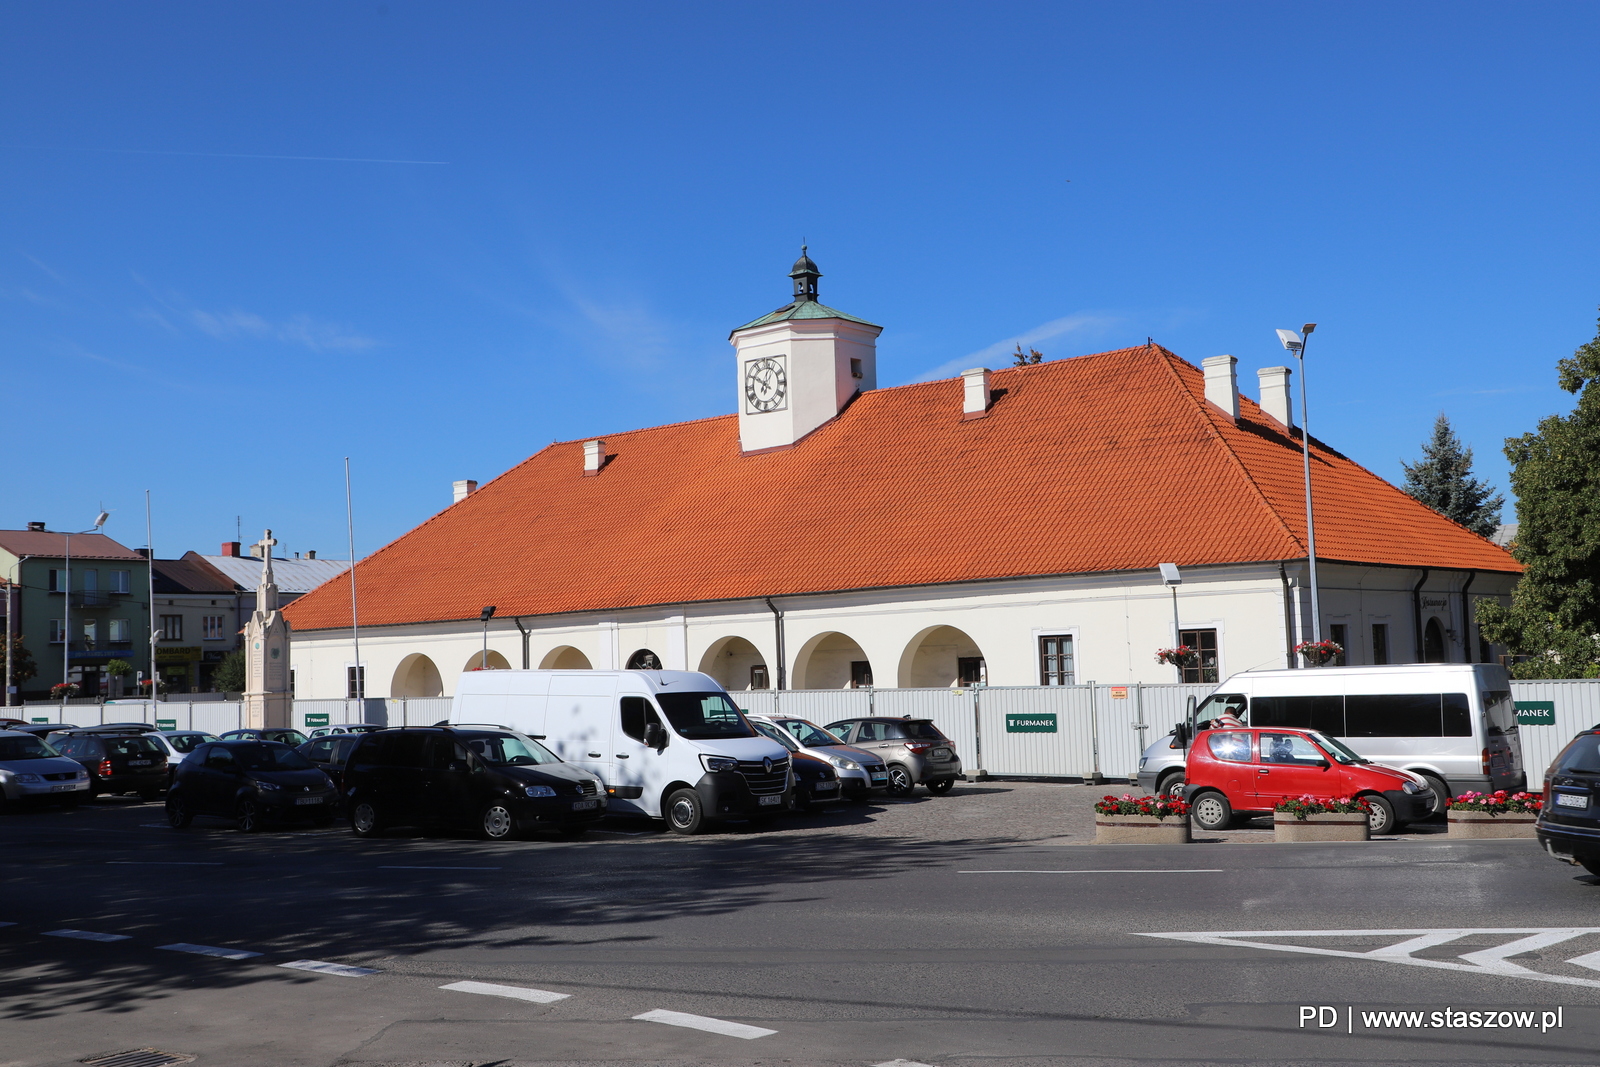 Ruszyła rewitalizacja centrum starego miasta Staszowa